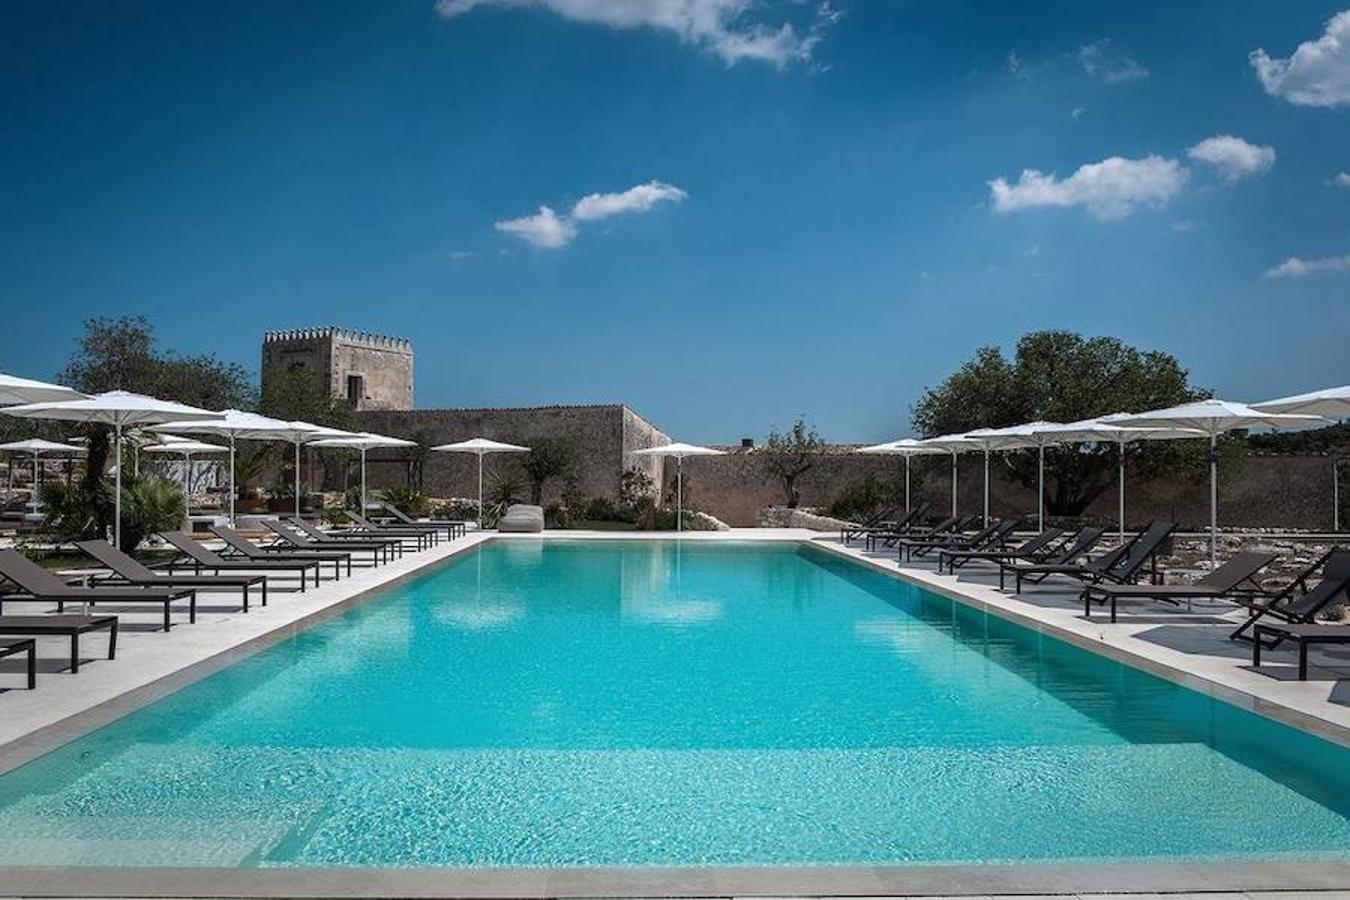 Así es el hotel Dimora delle Balze. La casa está construida alrededor de dos hermosos patios, flanqueados por terrazas y un bello jardín con piscina climatizada de agua salada